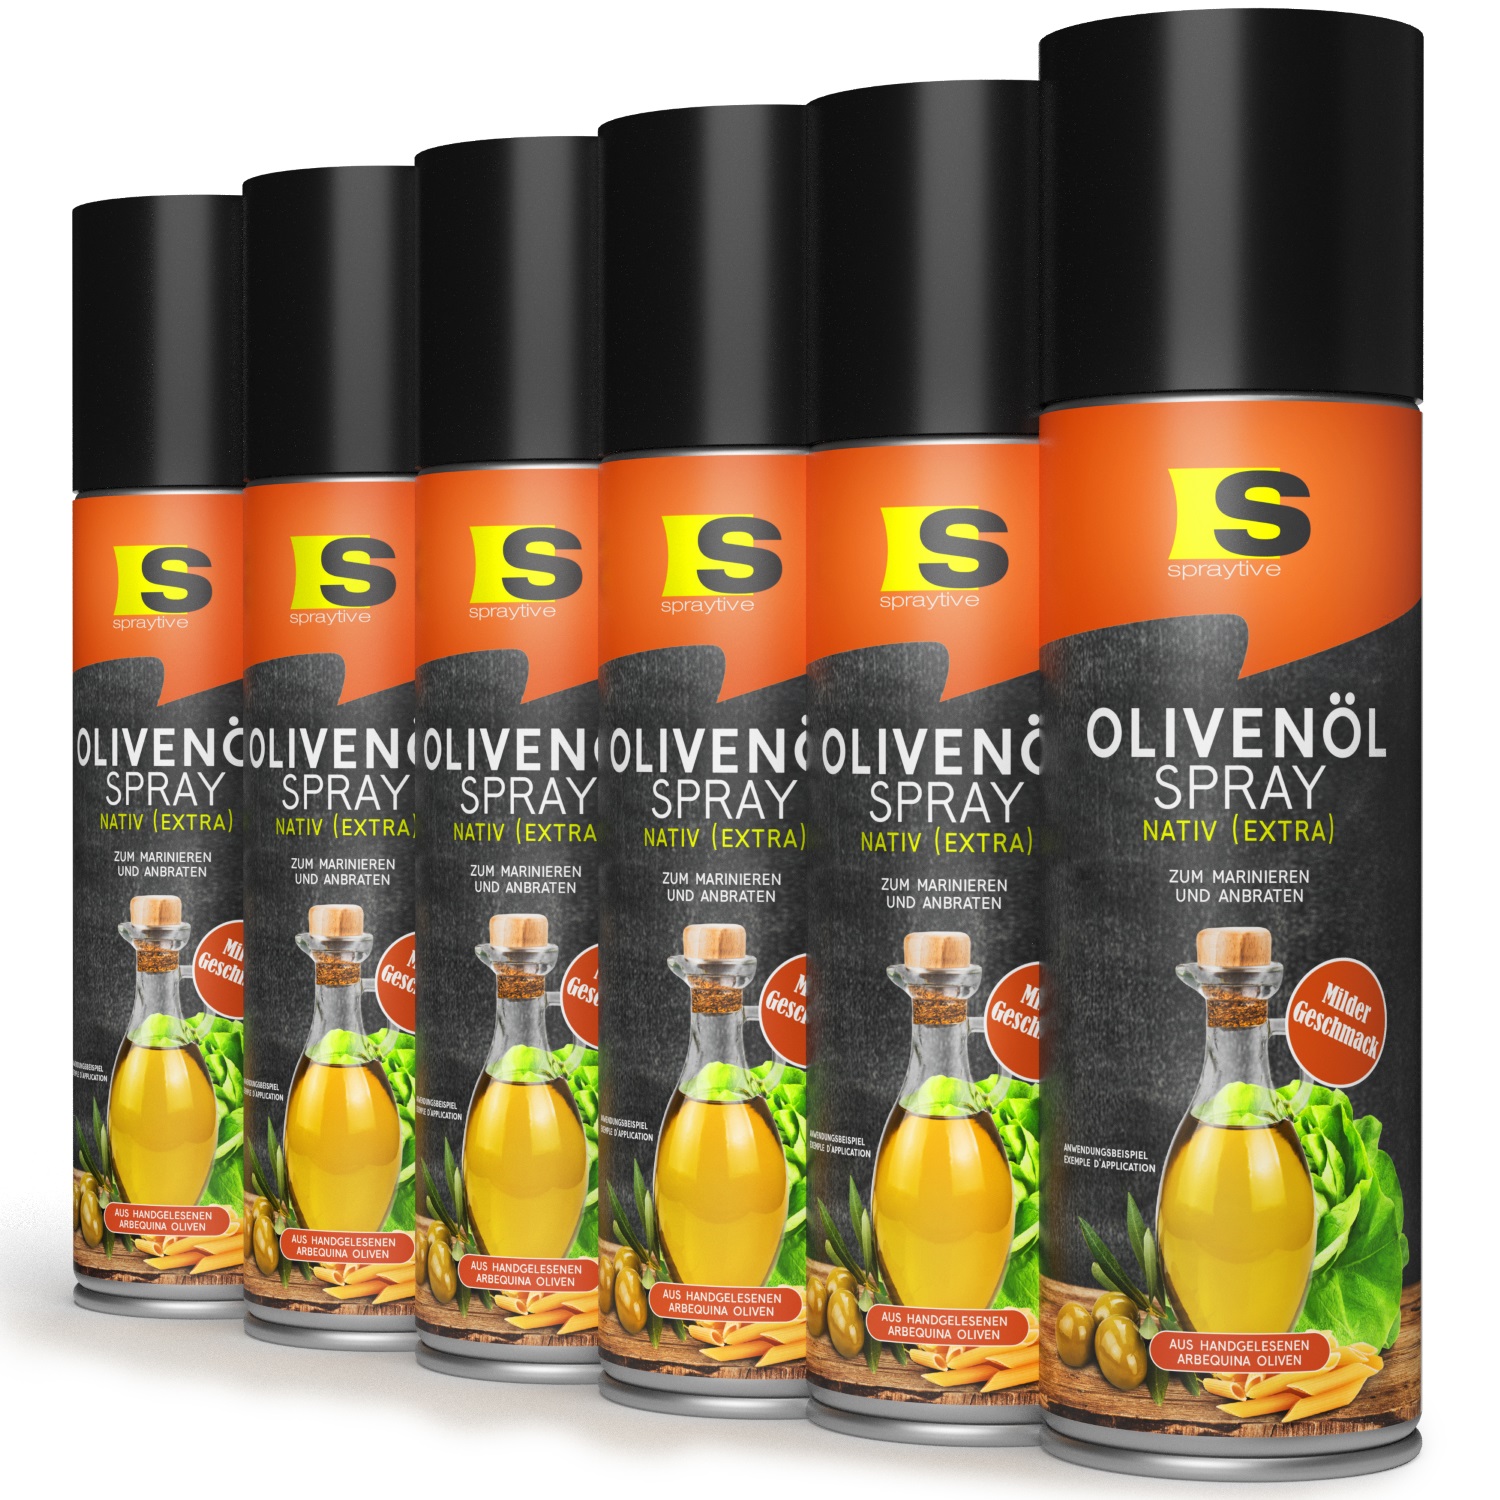 6 x 400ml Olivenöl Spray Nativ (Extra) - Zum Marinieren und Anbraten